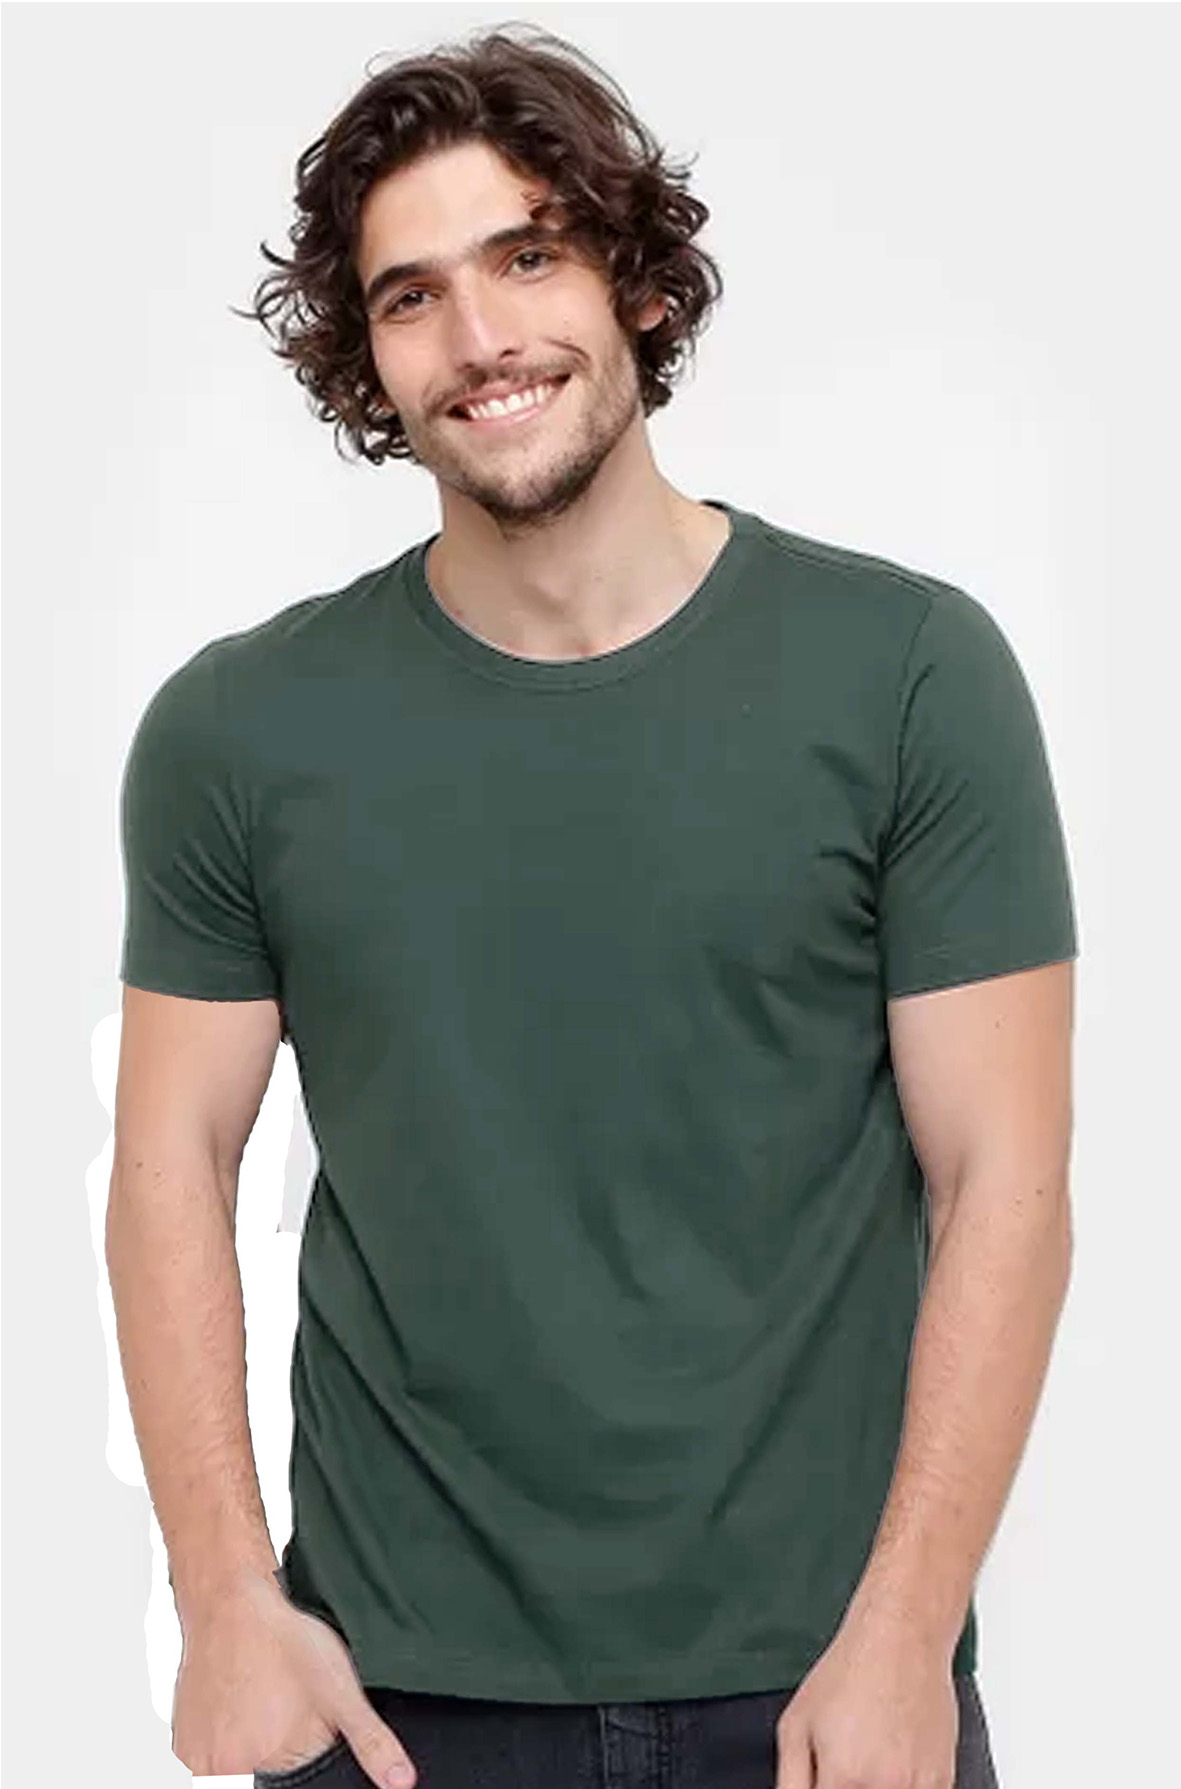 Camiseta Básica Masculina 100% Algodão - Kohmar - Foto 4